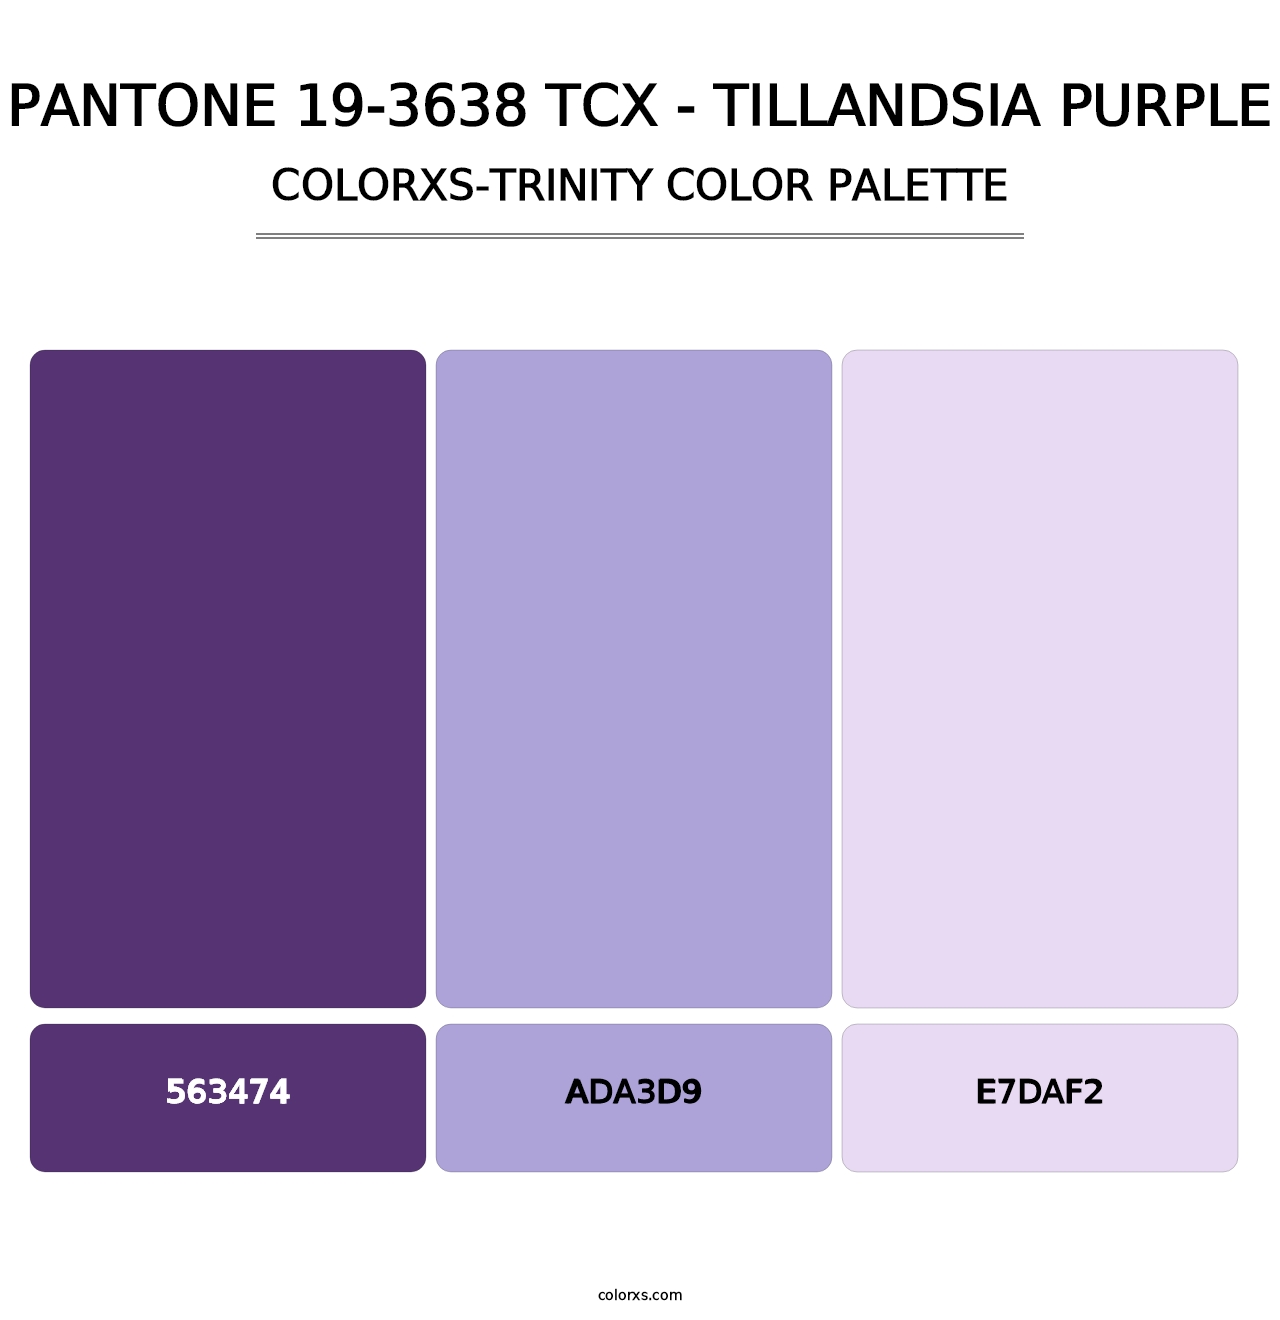 PANTONE 19-3638 TCX - Tillandsia Purple - Colorxs Trinity Palette